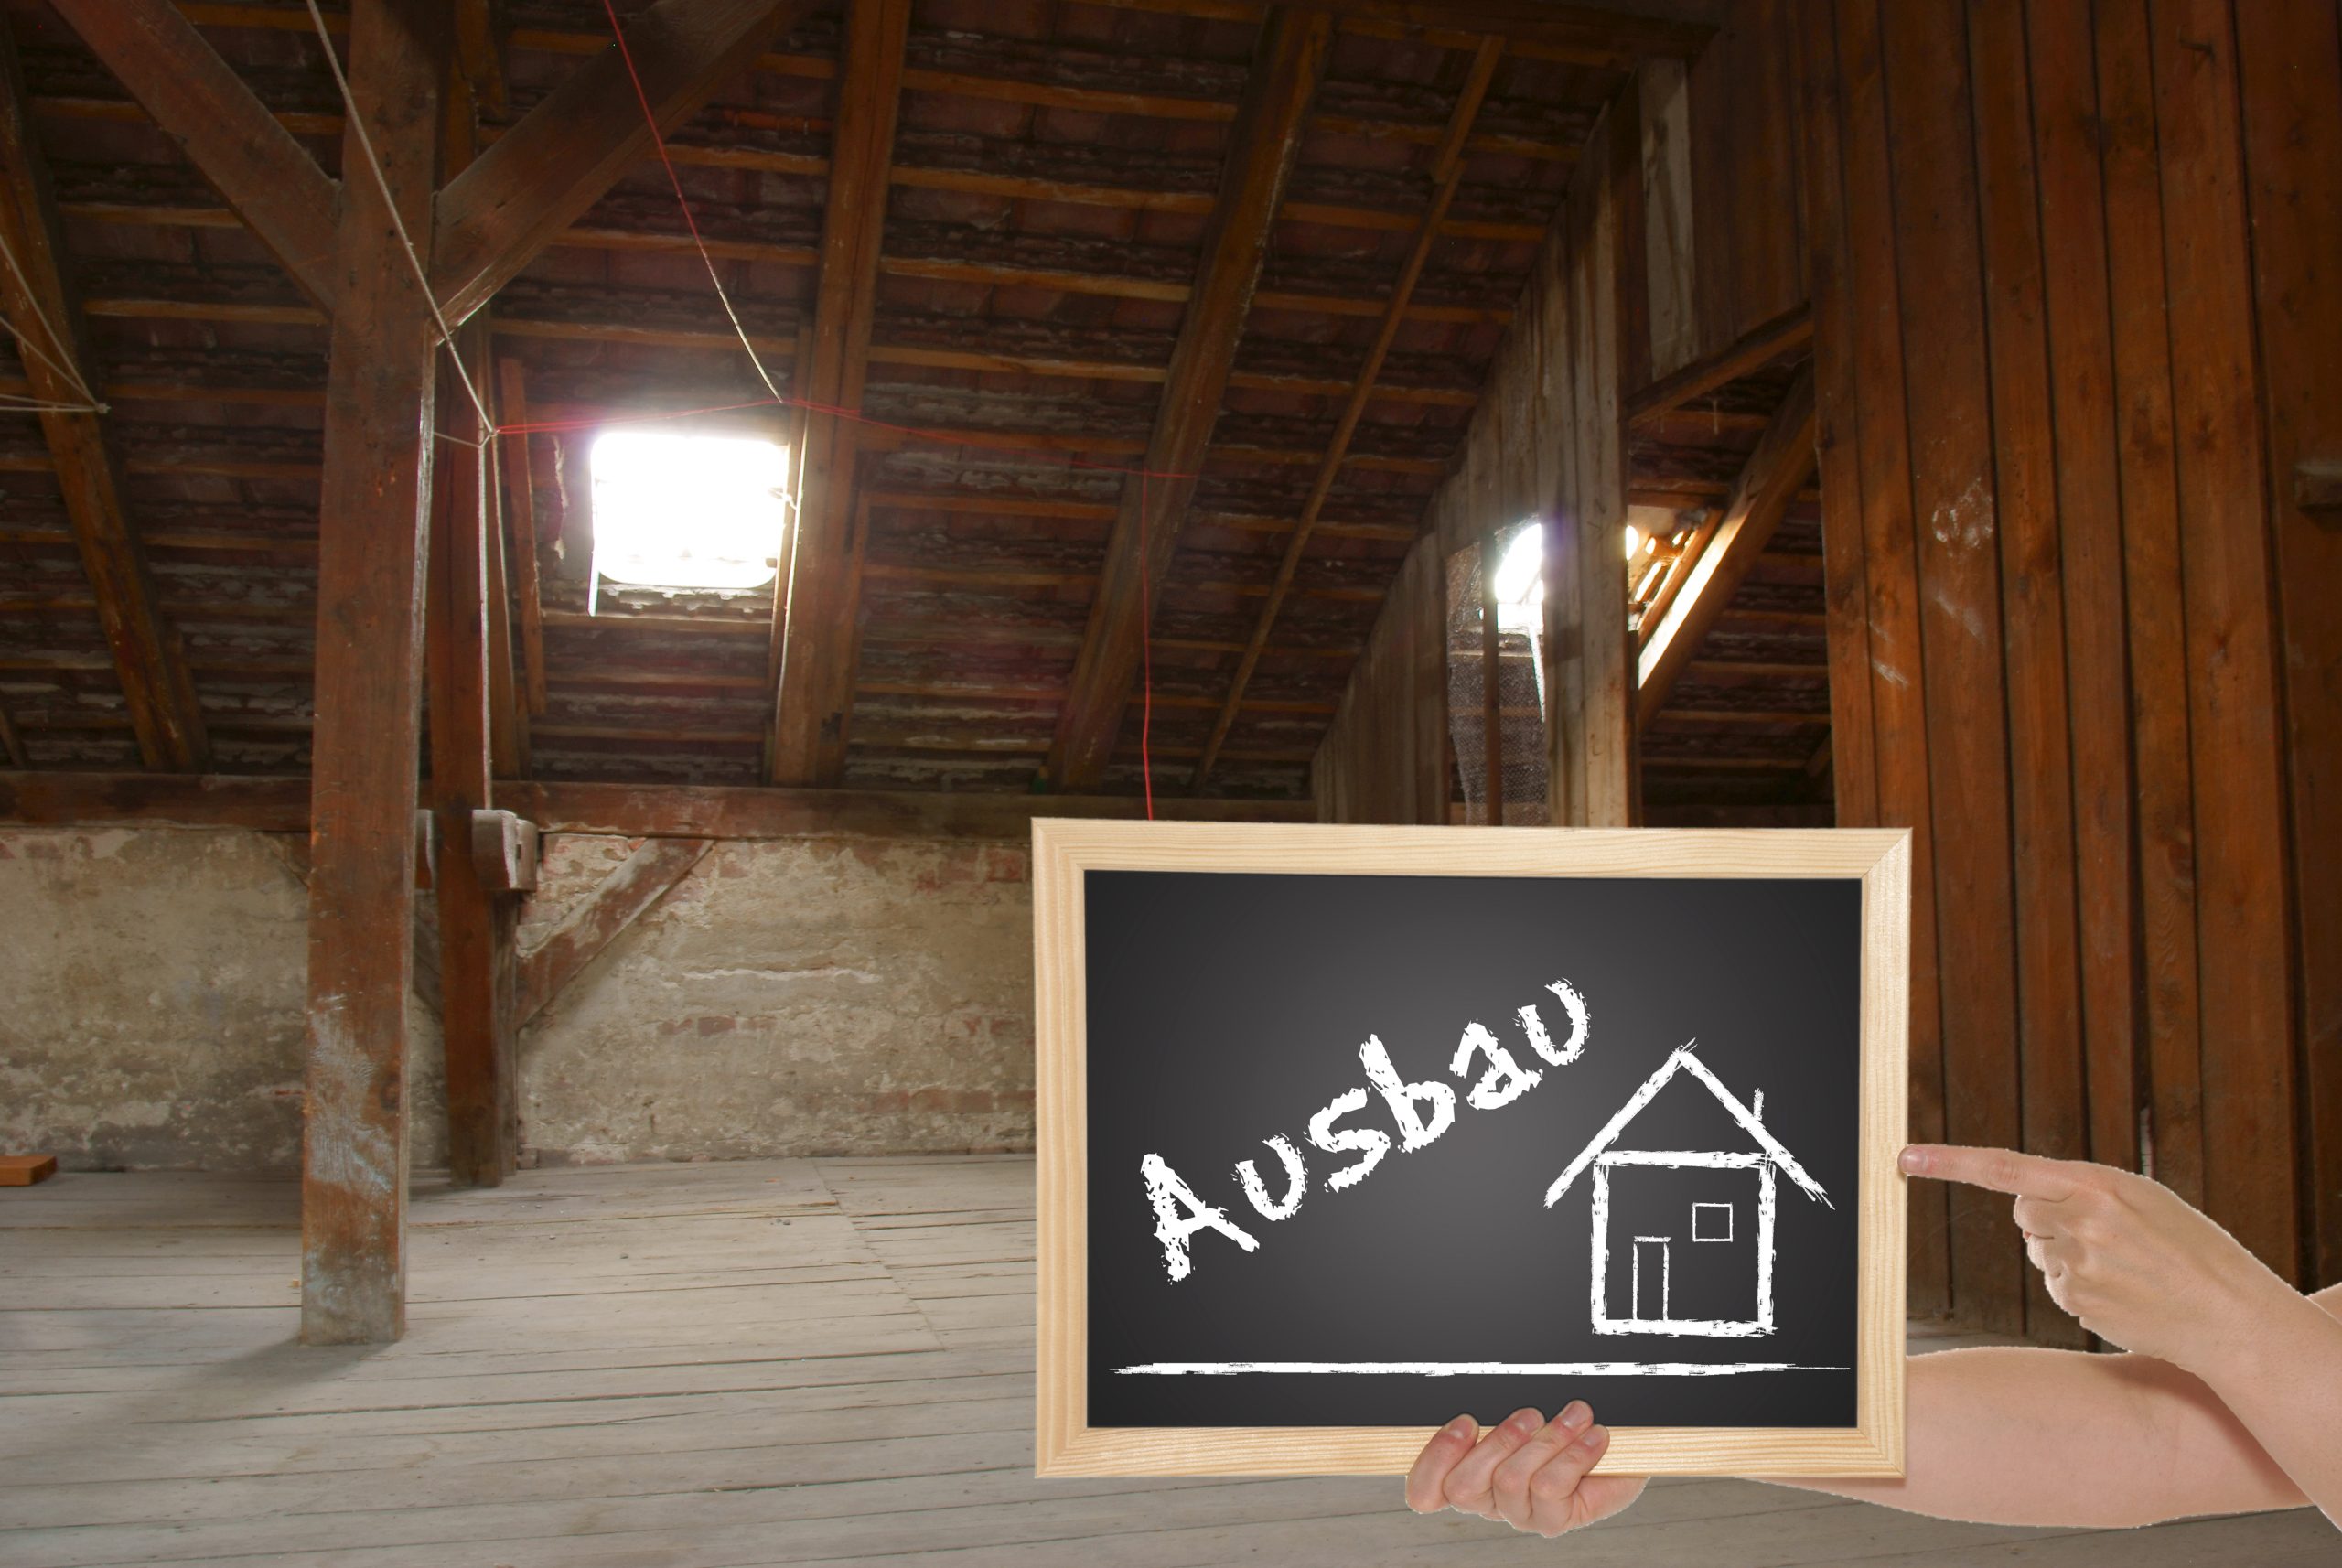 Ein ausgebauter Dachboden schafft mehr Wohnraum und Komfort. Foto: PhotographyByMK / stock adobe